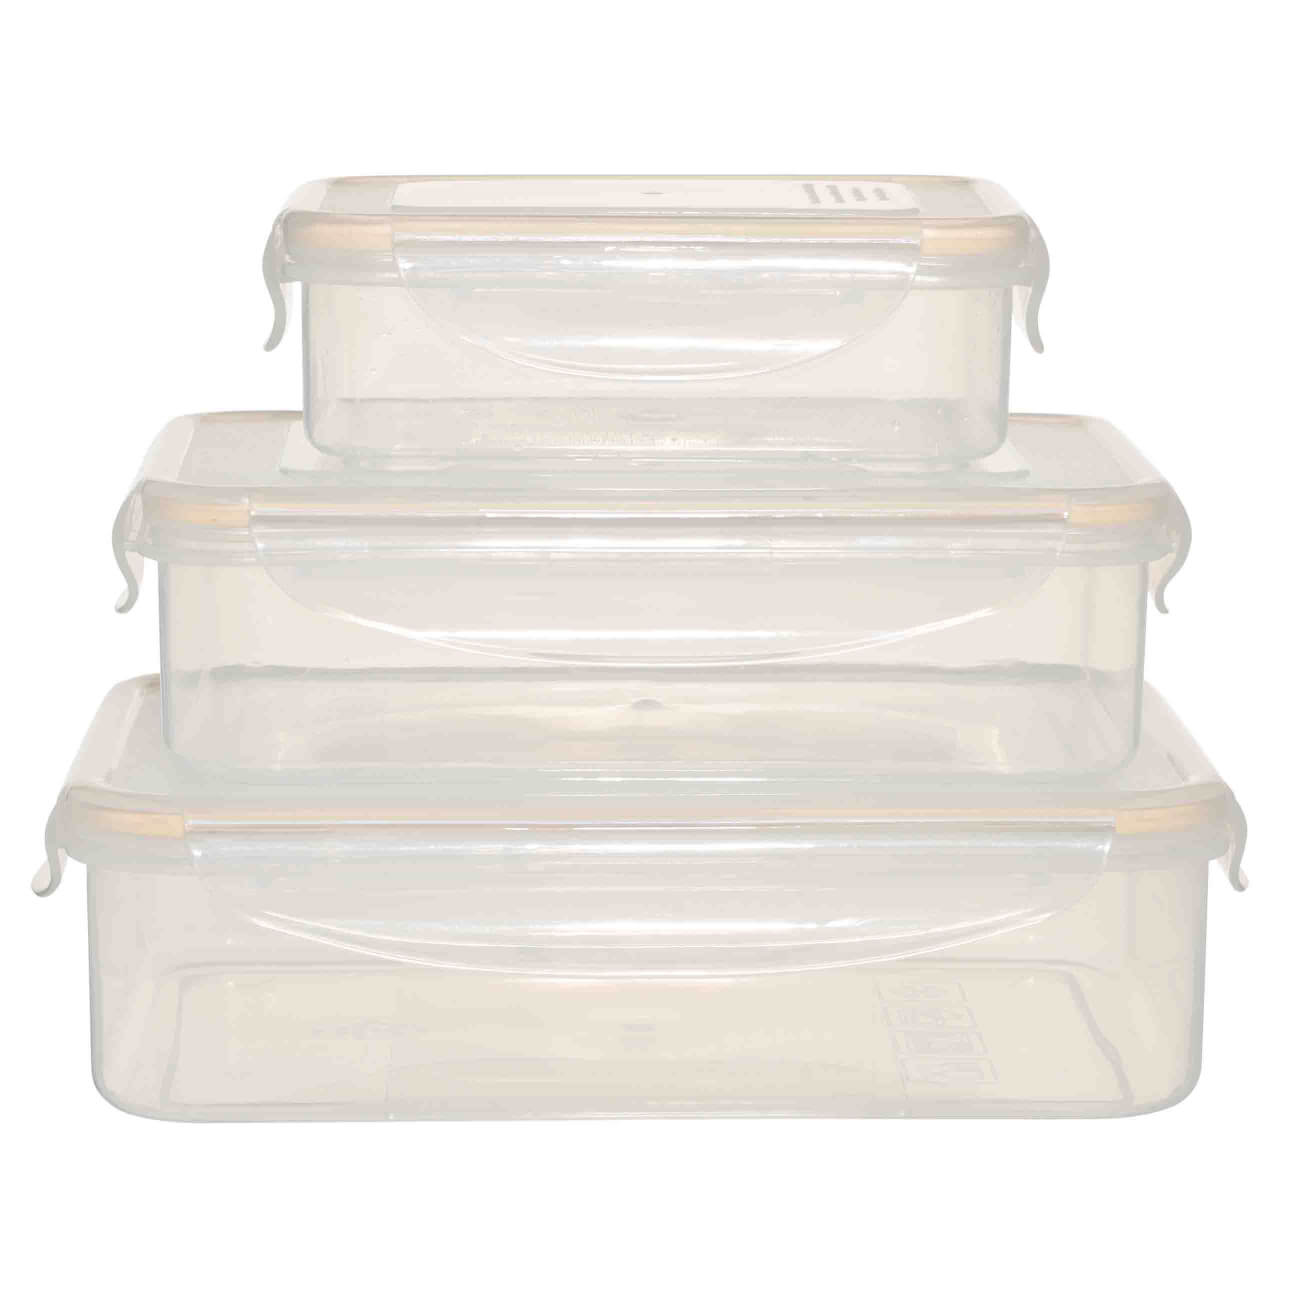 Набор контейнеров, 3 шт, с клипсами, пластик/силикон, прямоугольный, бежевый, Roomy clip кисточка для барбекю силикон пластик